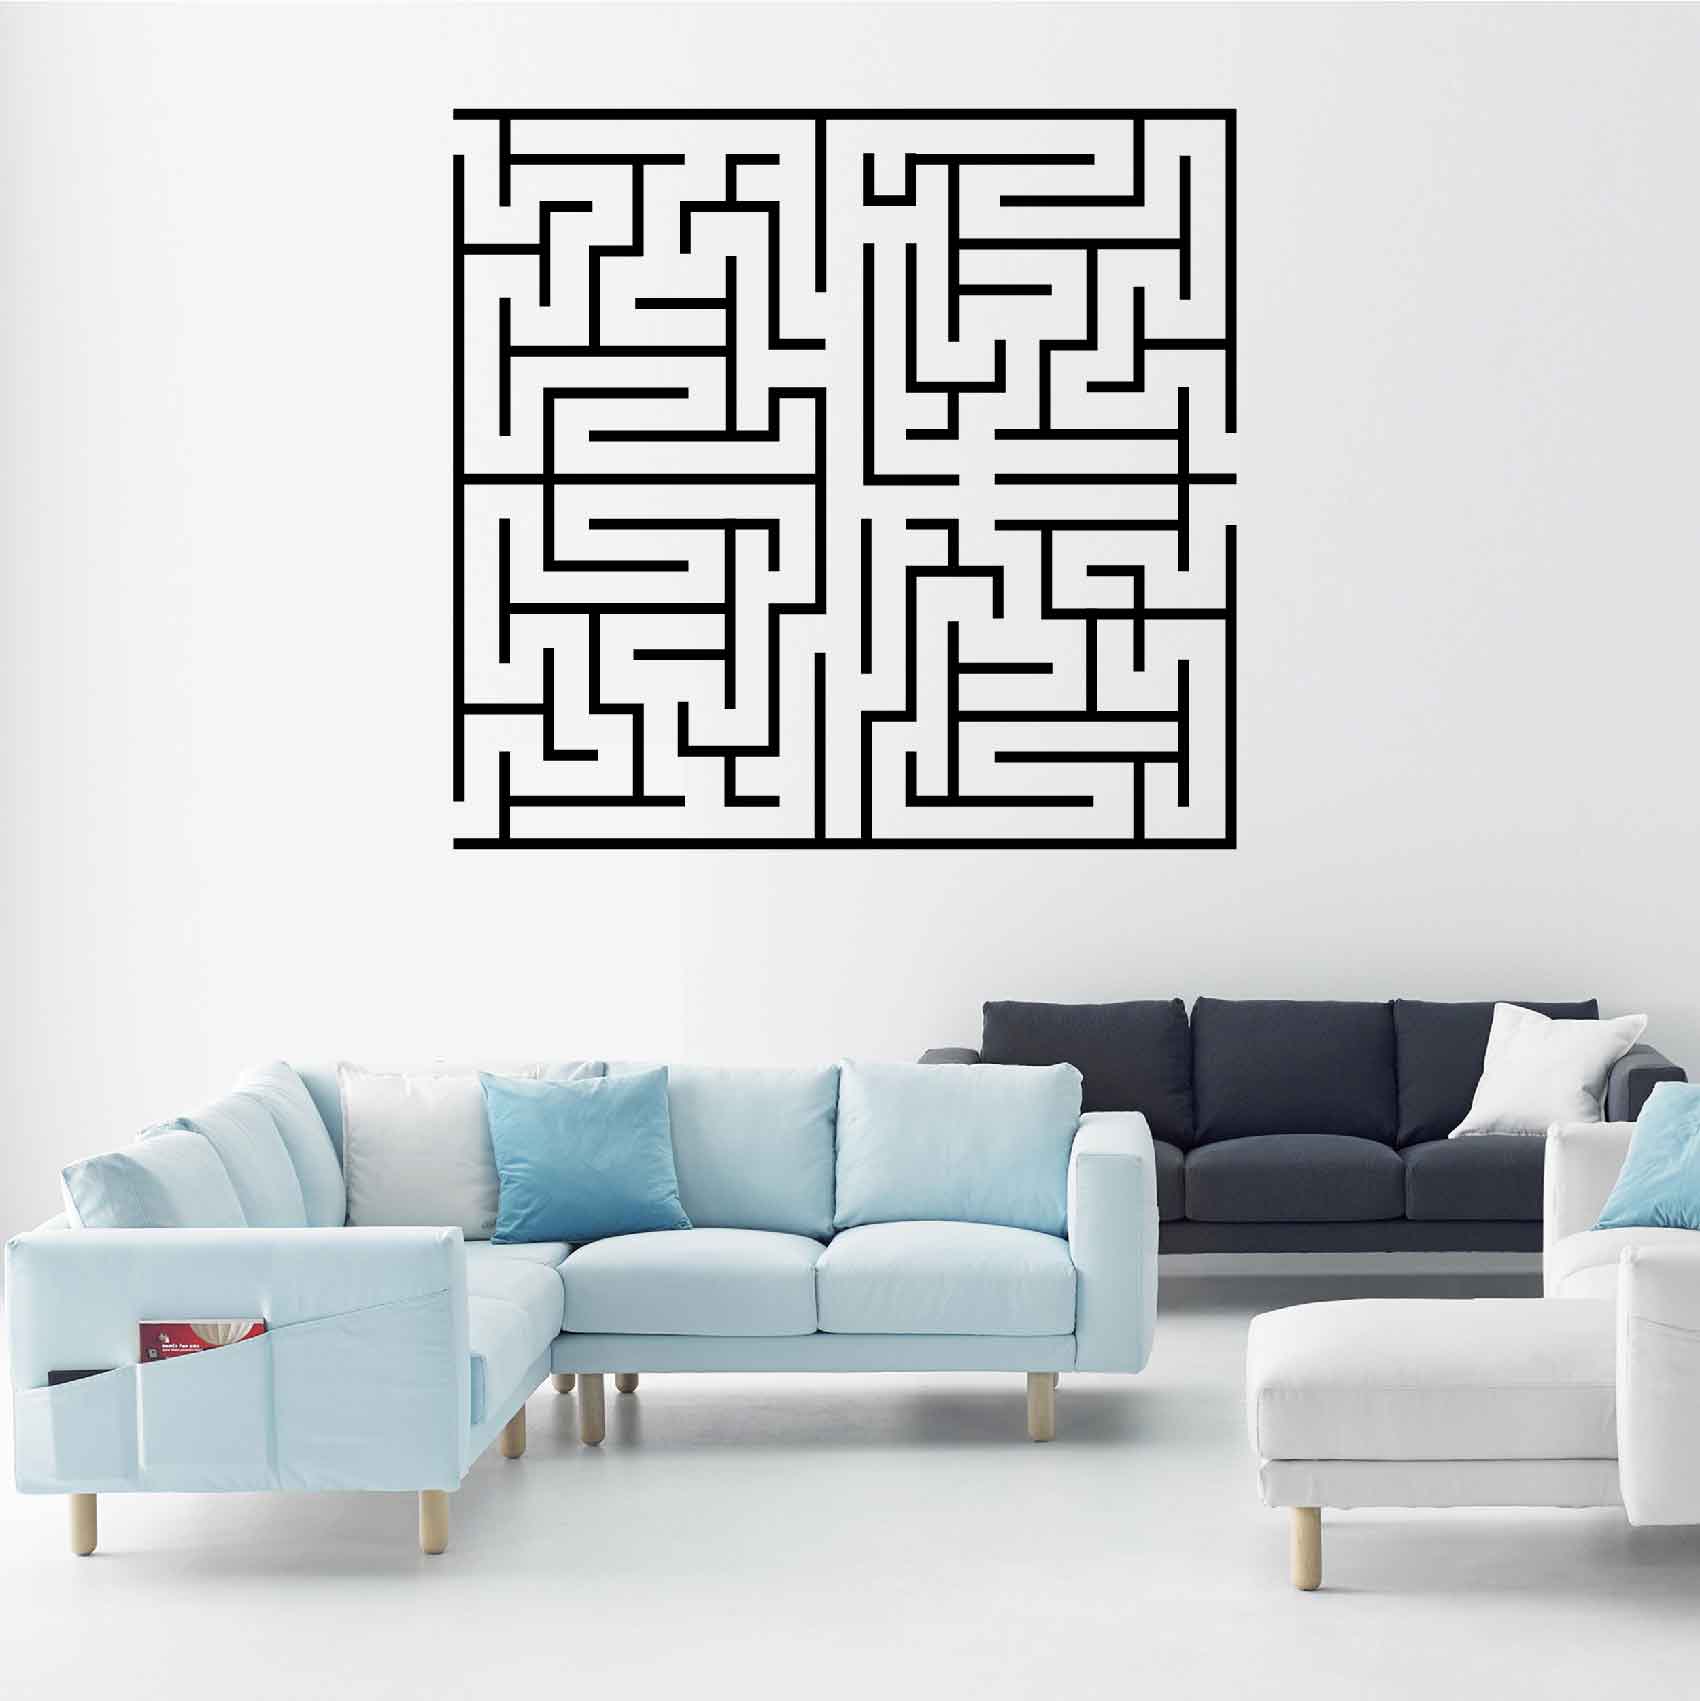 stickers-labyrinthe-ref1labyrinthe-stickers-muraux-autocollant-deco-salon-séjour-sticker-mural-design-art-chambre-cuisine